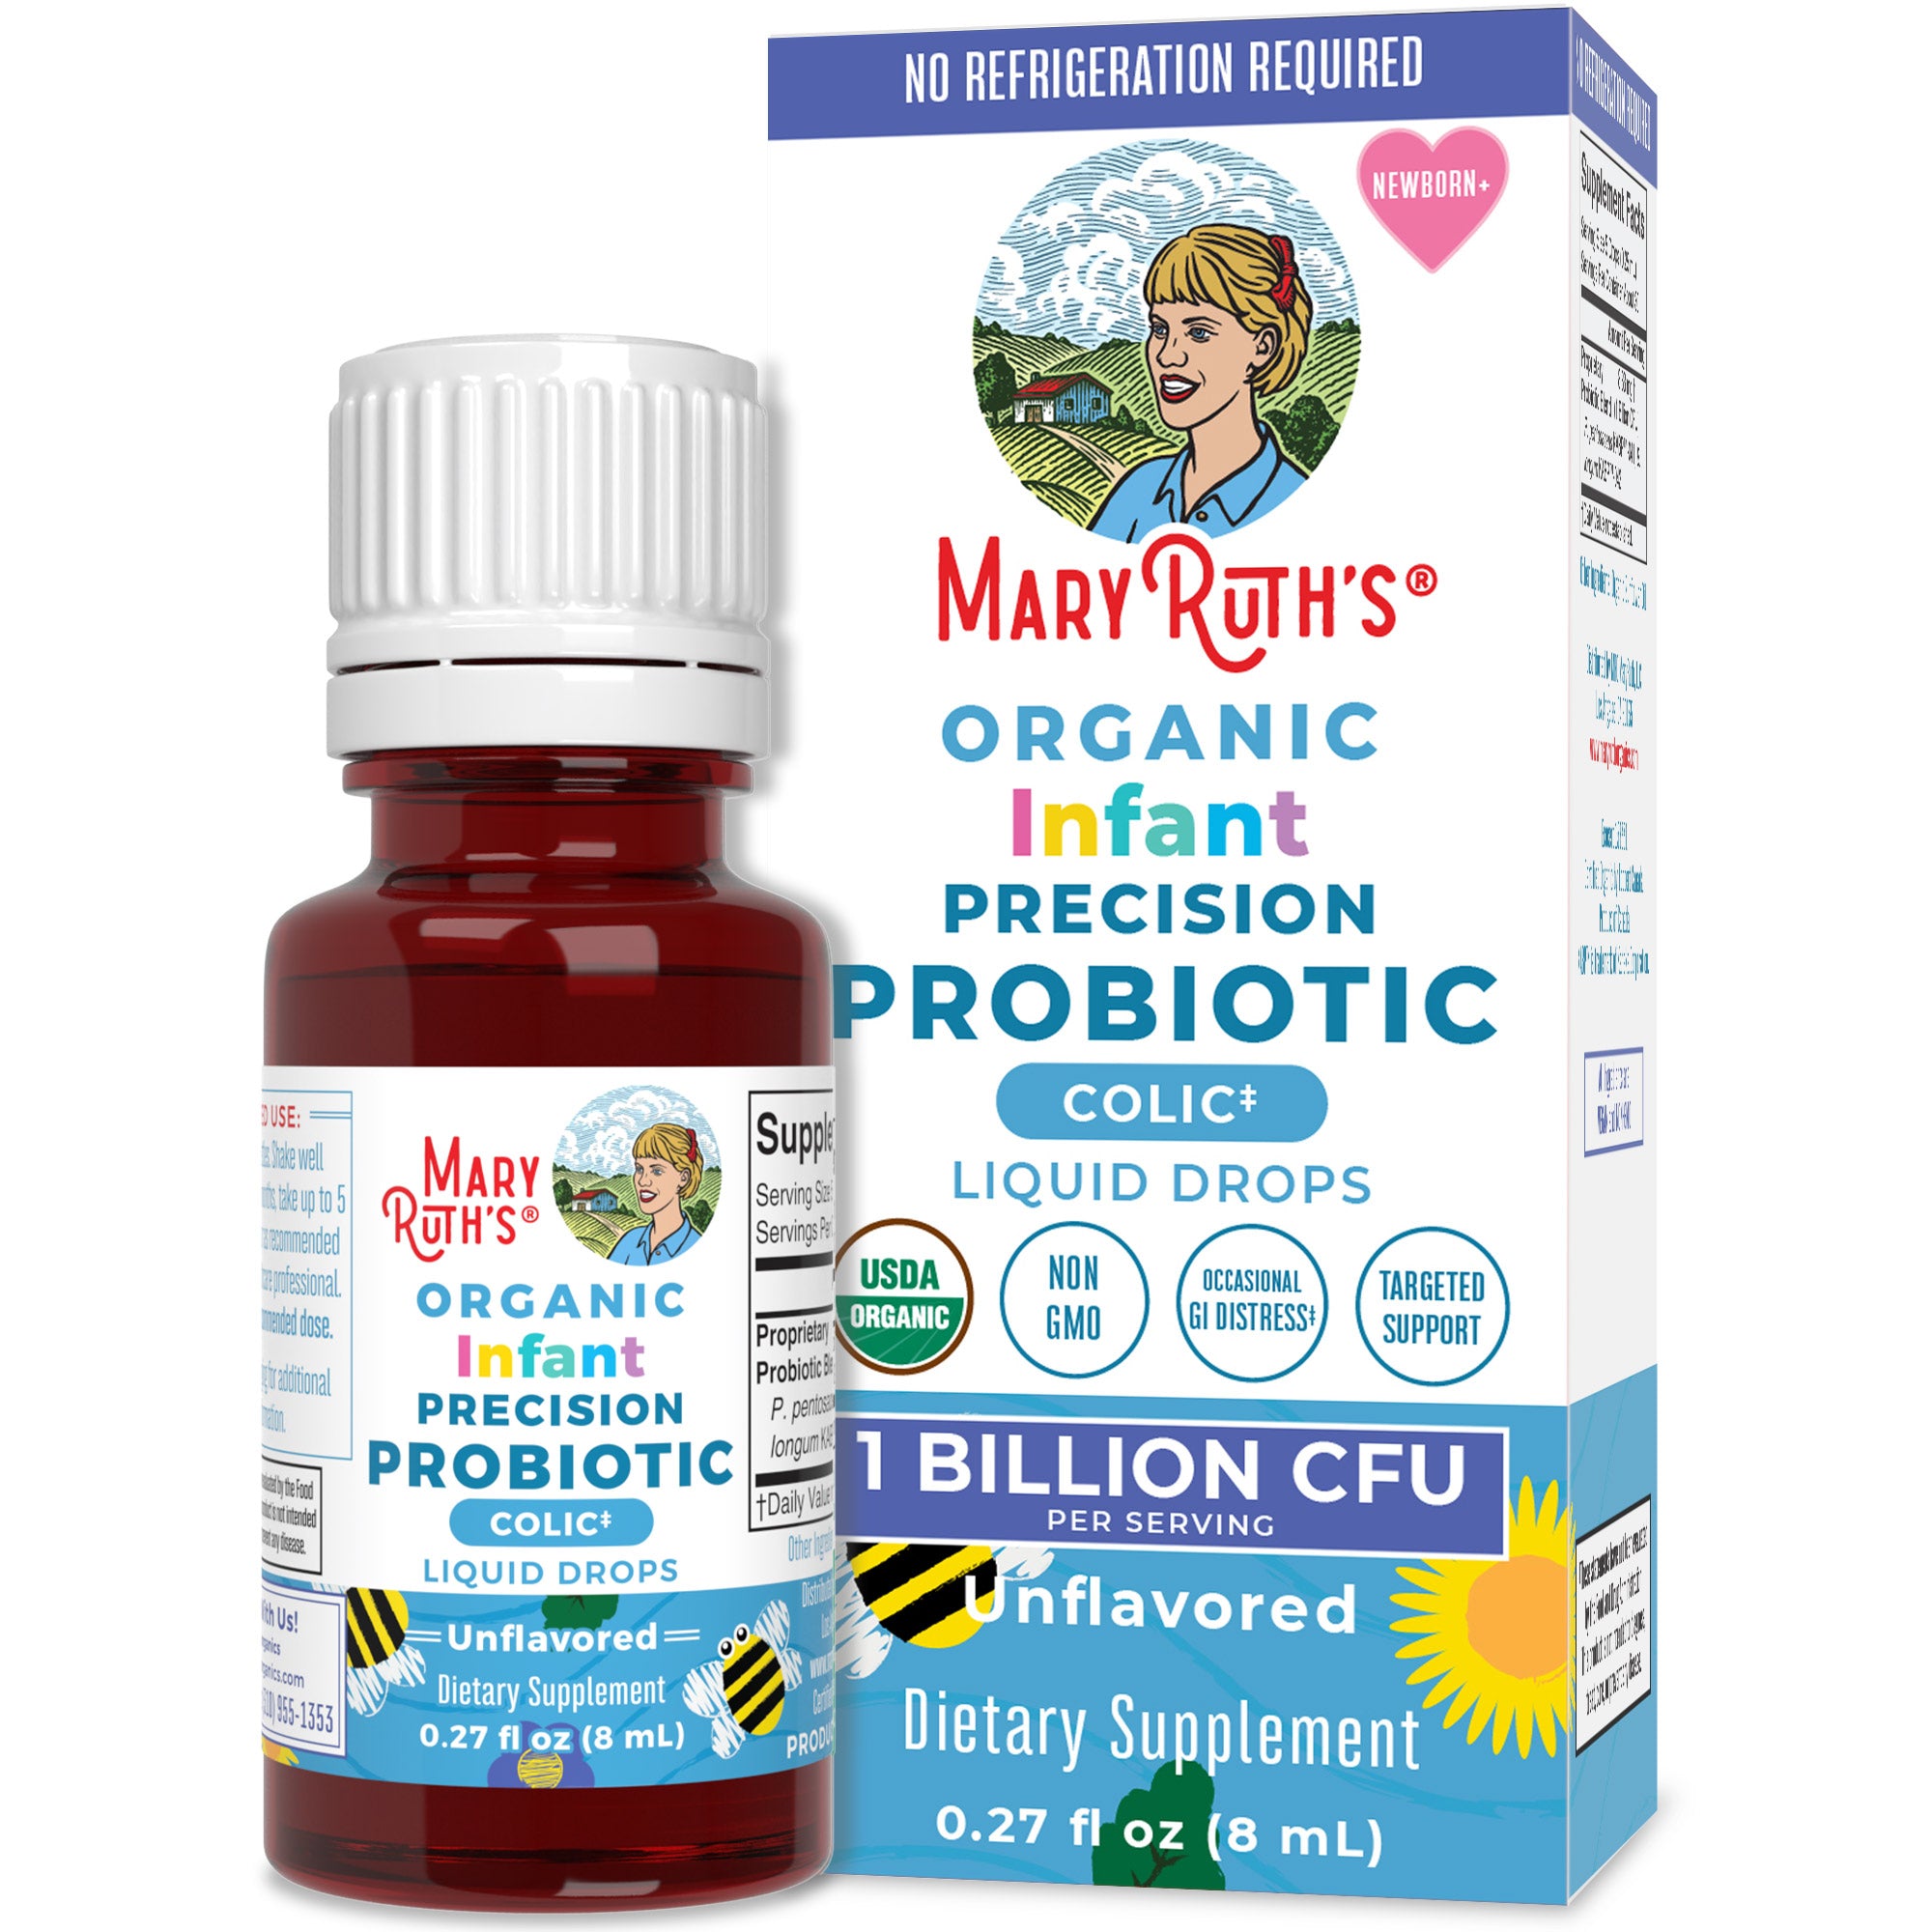 Organic Infant Precision Probiotic Colic Liquid Drops